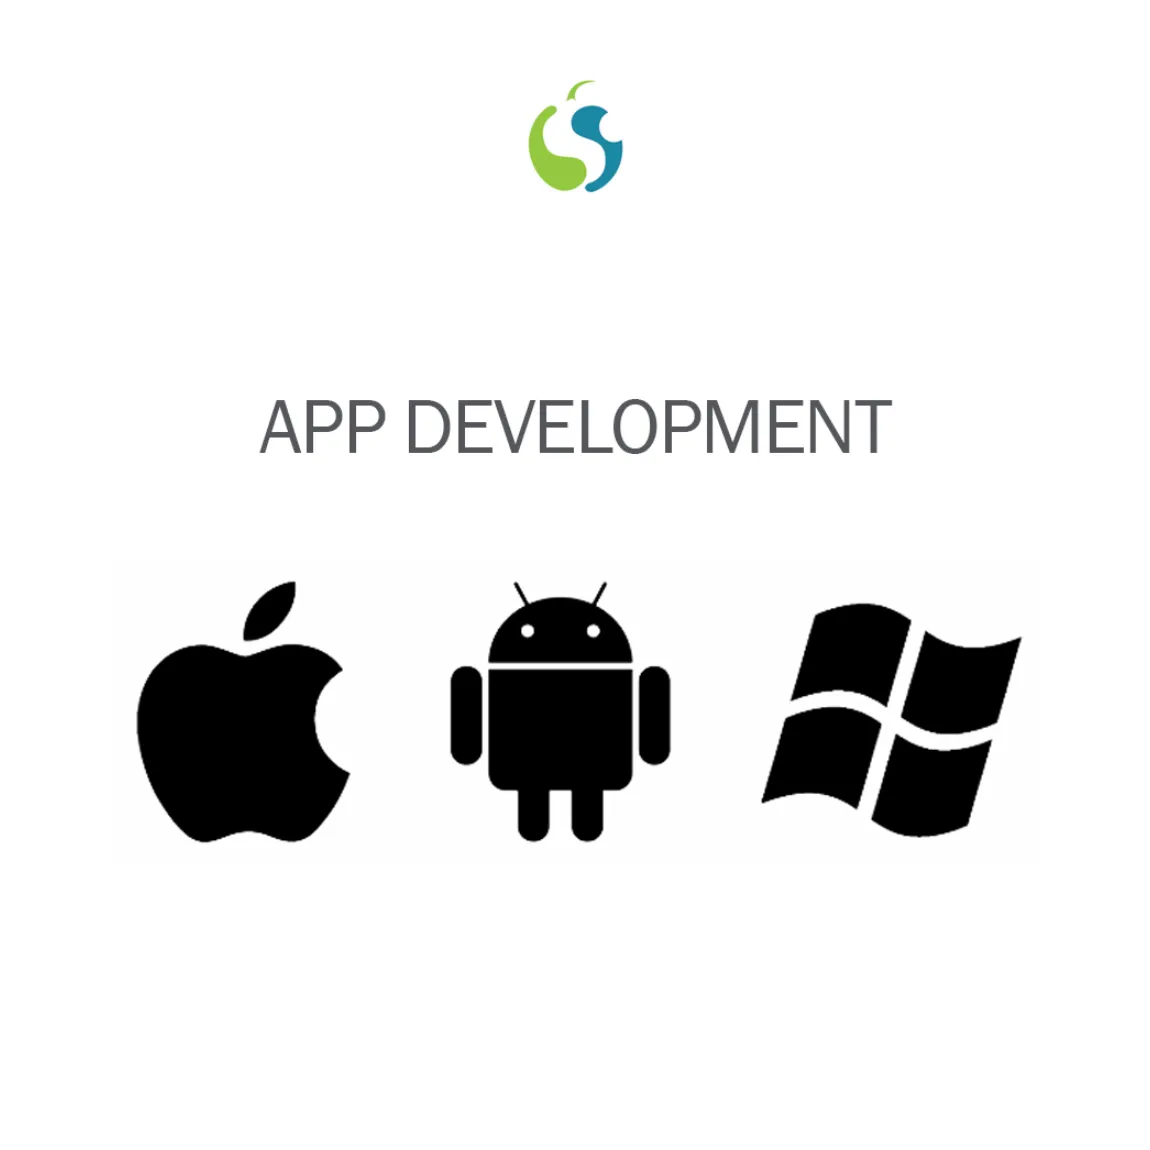 Hoch funktionelle, robuste App-Entwicklungs dienst leister in Indien, die die neuesten Technologien und Werkzeuge für ein effektives Design verwenden